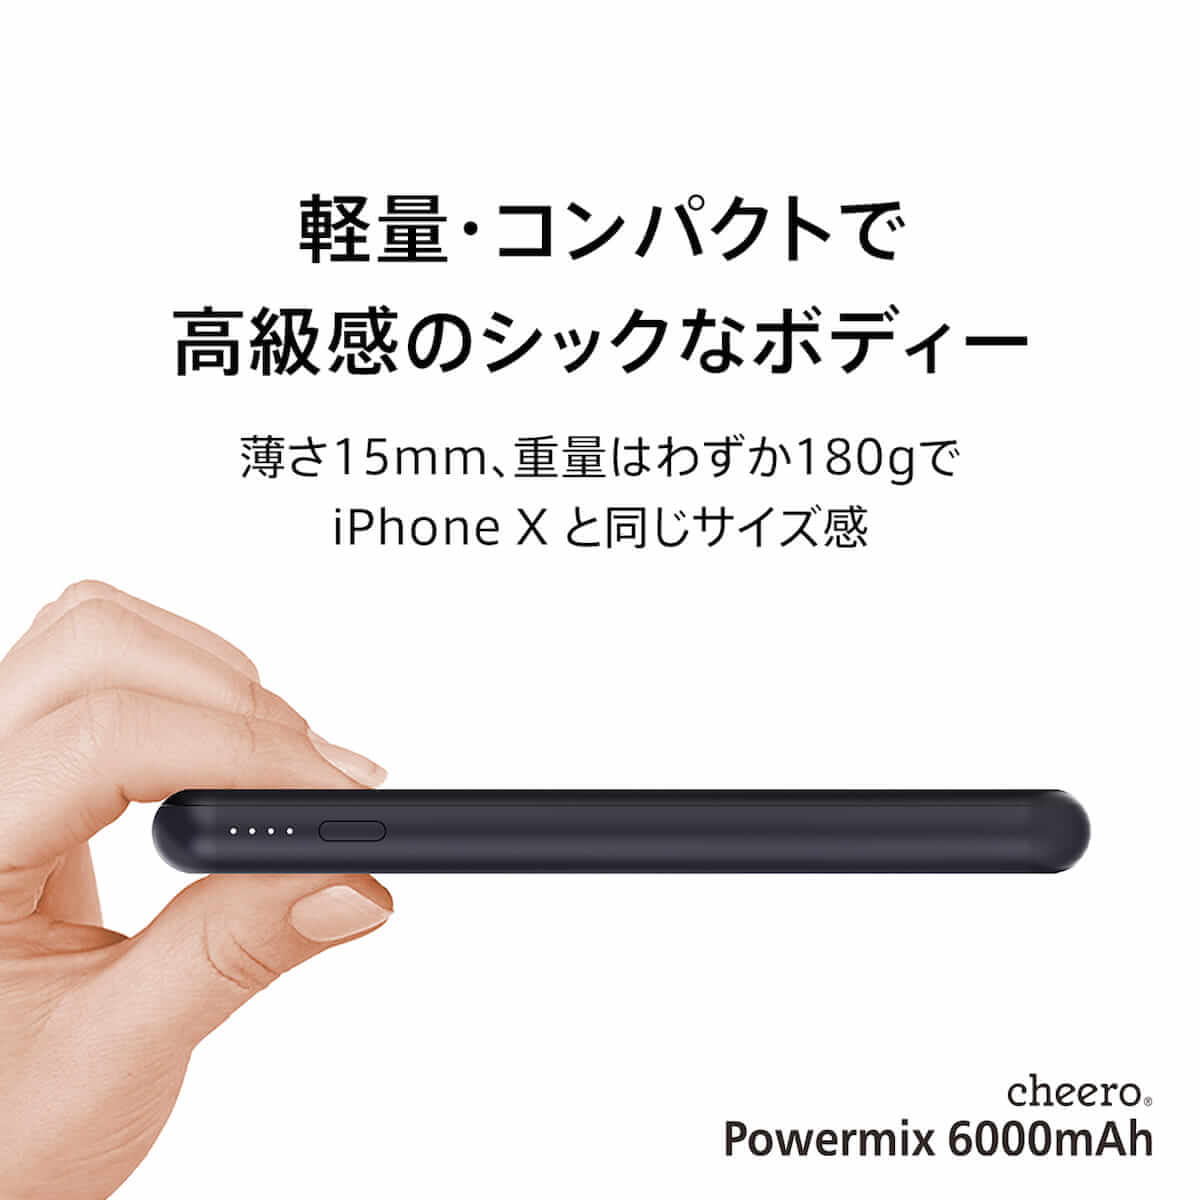 iPhone Xをワイヤレス充電できるモバイルバッテリー「cheero Powermix 6000mAh」登場！ technology180703_cheero_3-1200x1200